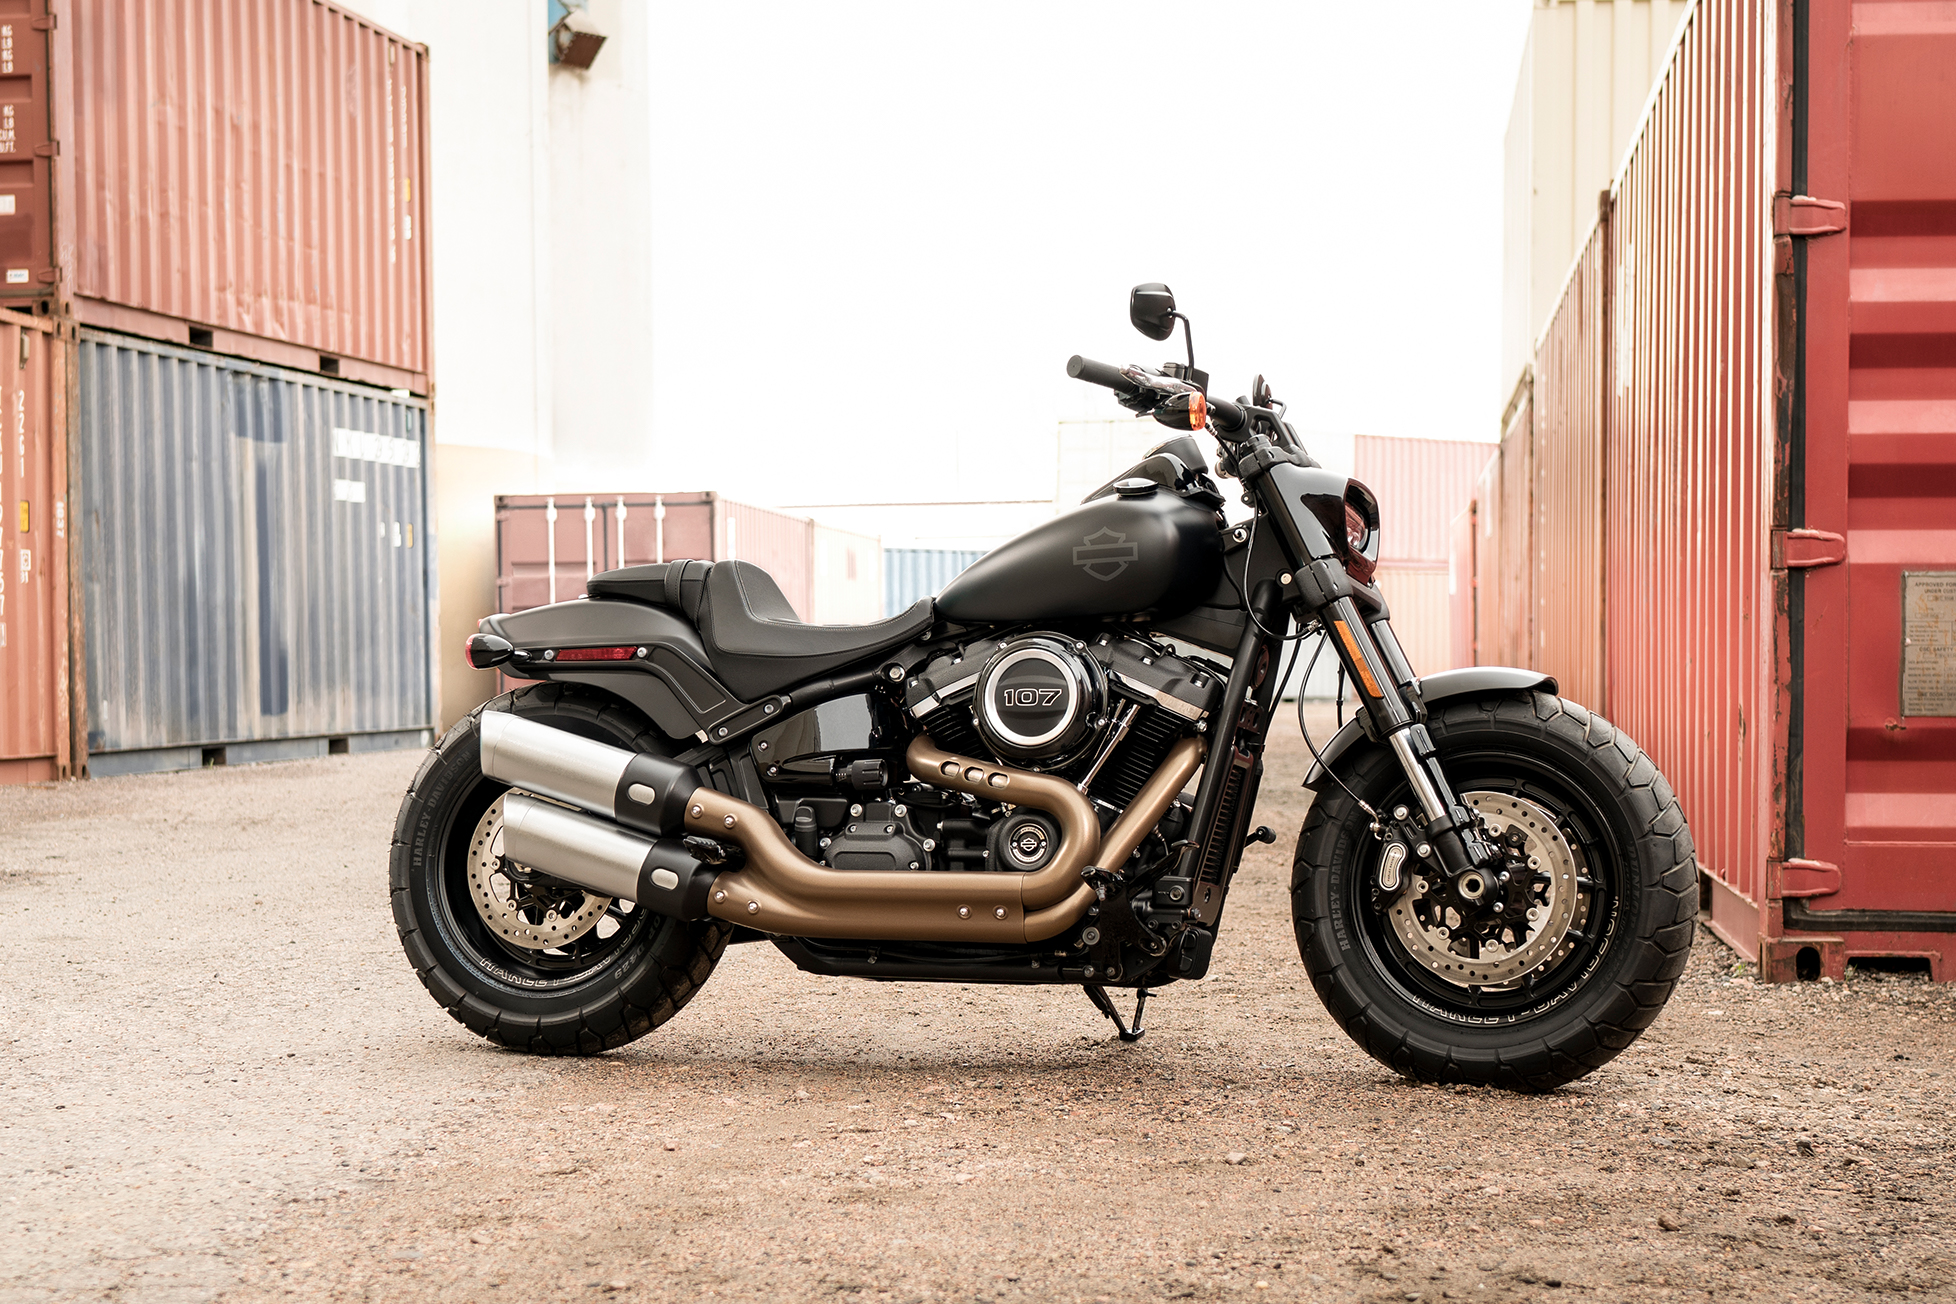  2019  Fat Bob Motorcycle Harley  Davidson  India